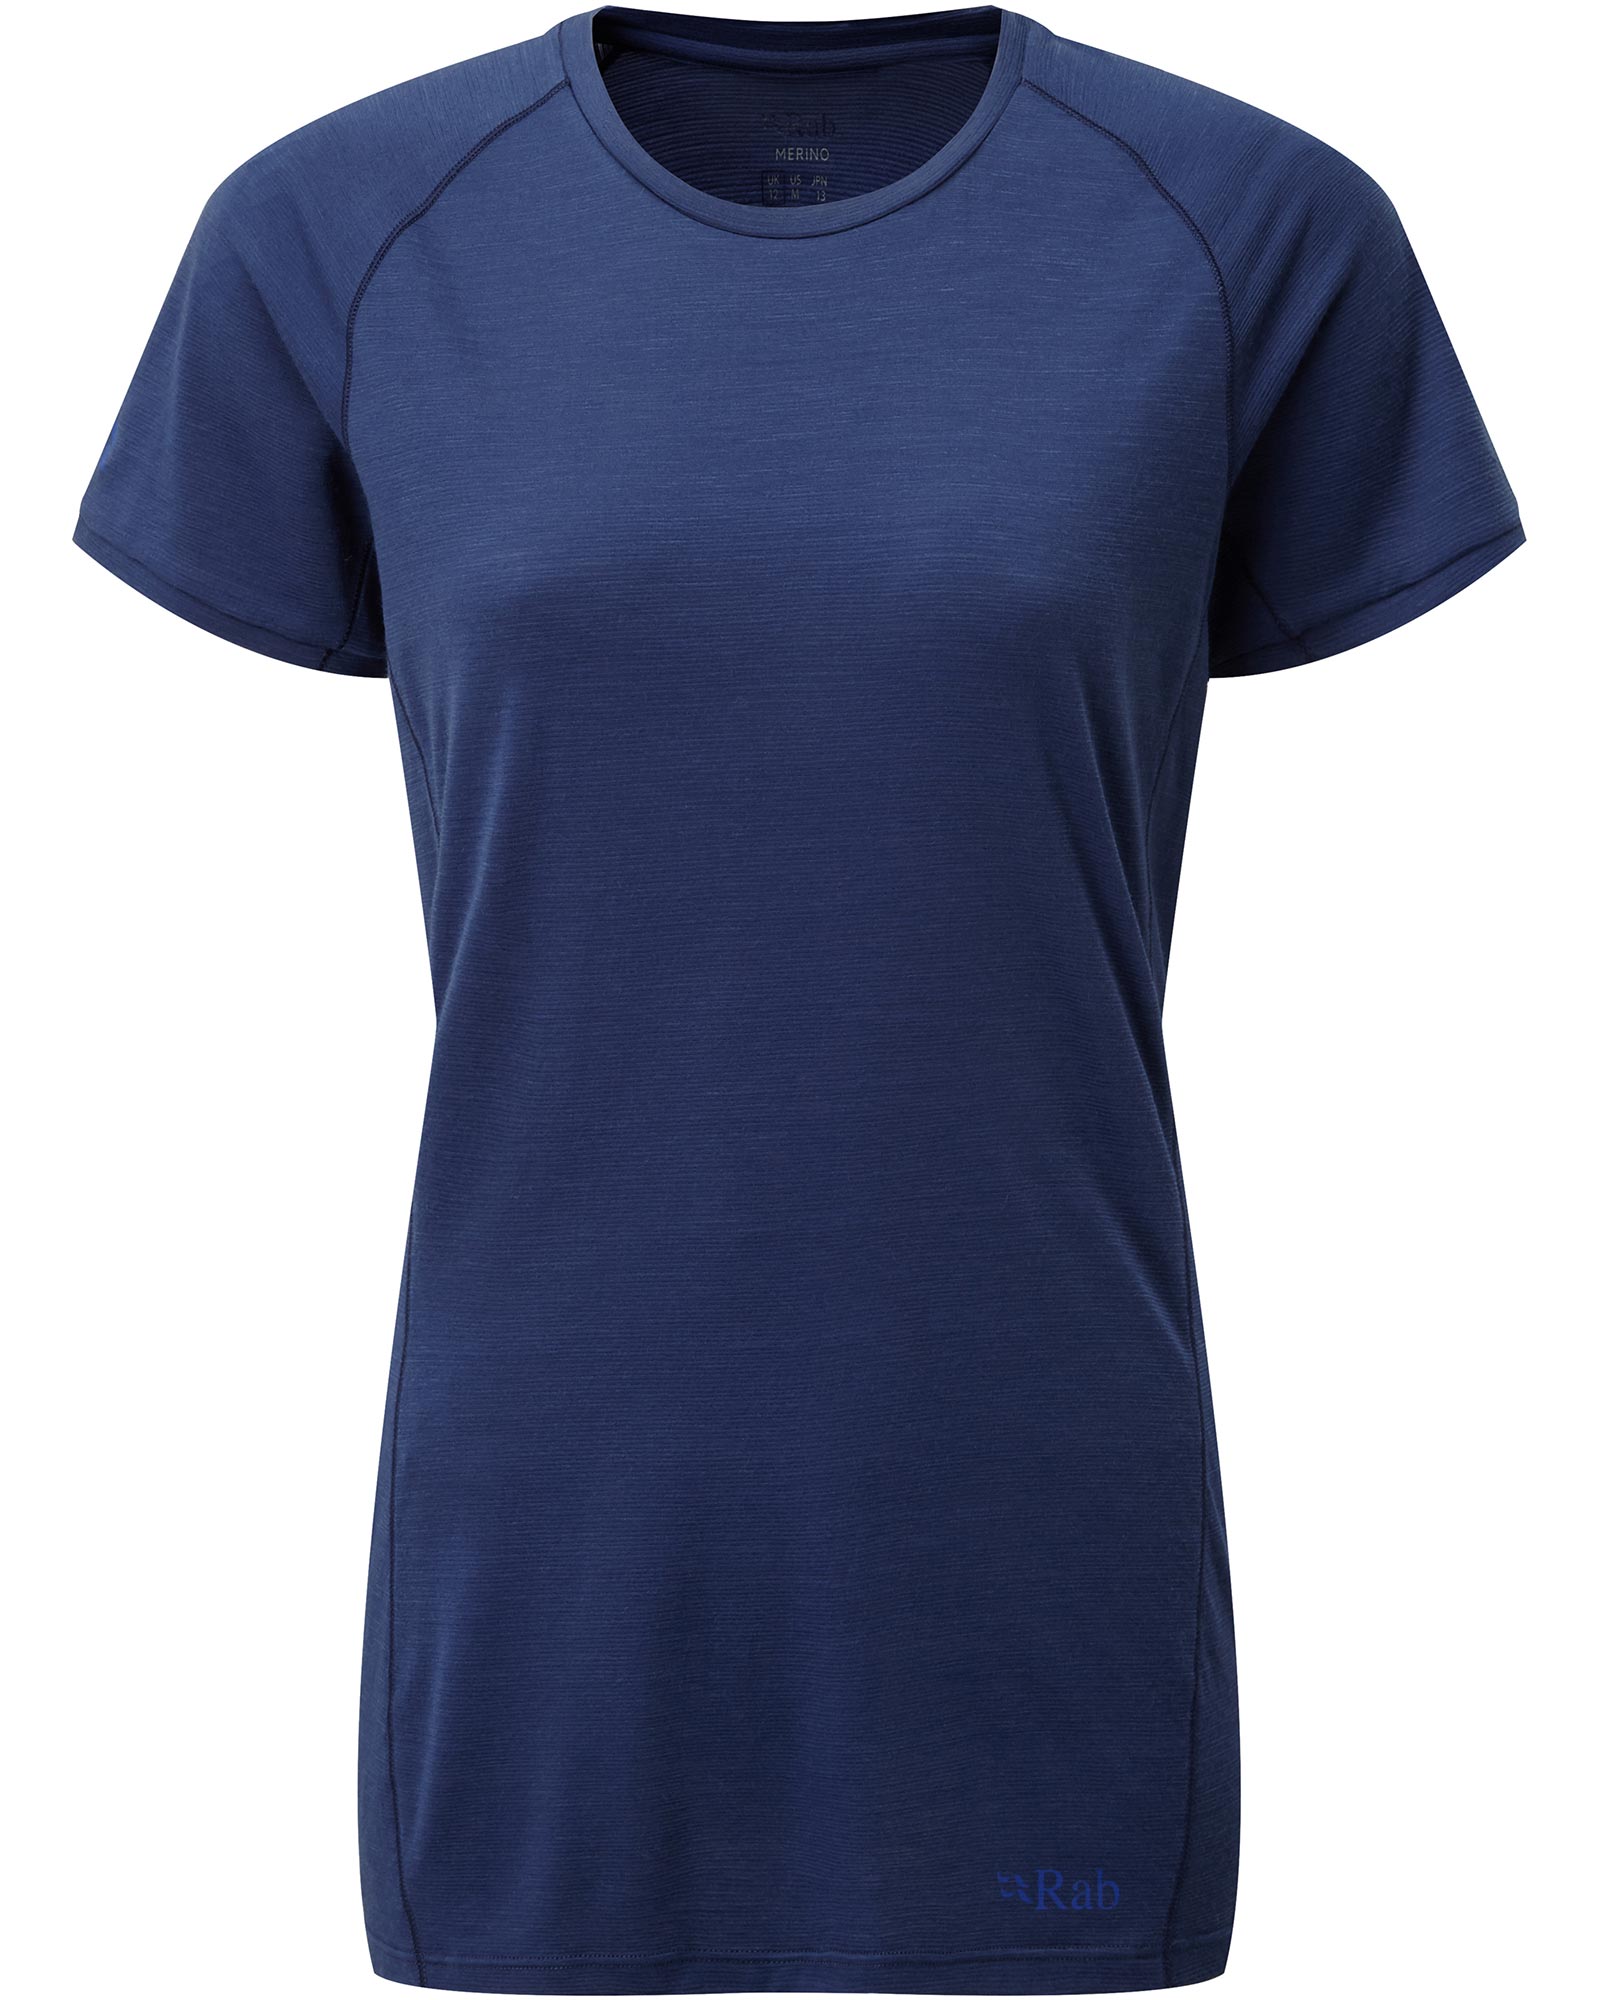 Rab Forge Merino Women’s T Shirt - Blueprint 16